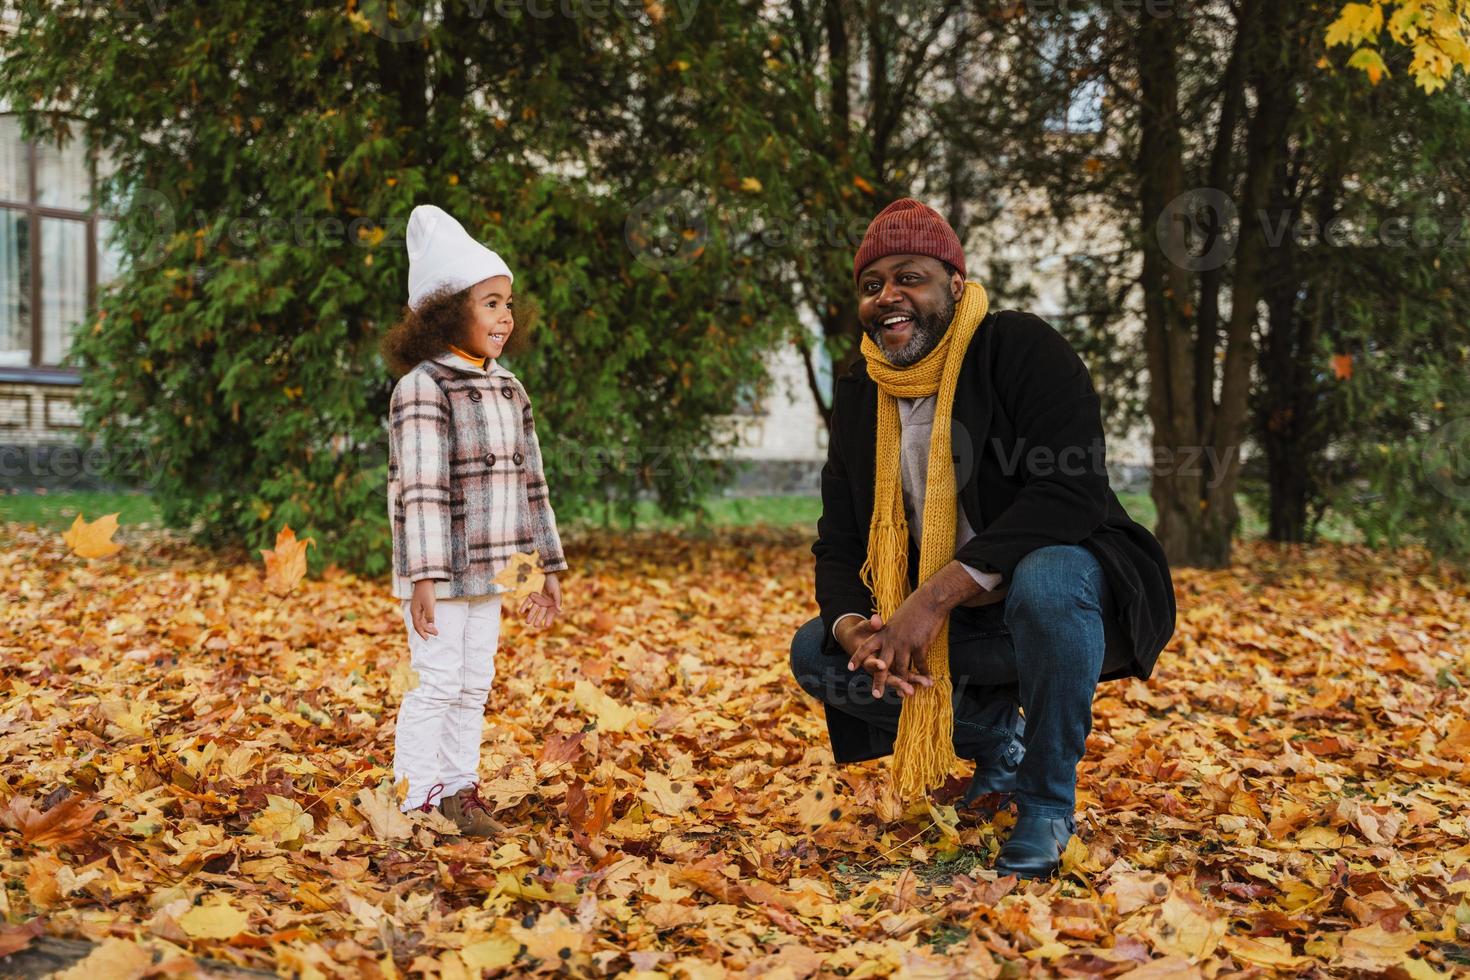 avô e neta negros se divertindo com folhas caídas no parque de outono foto